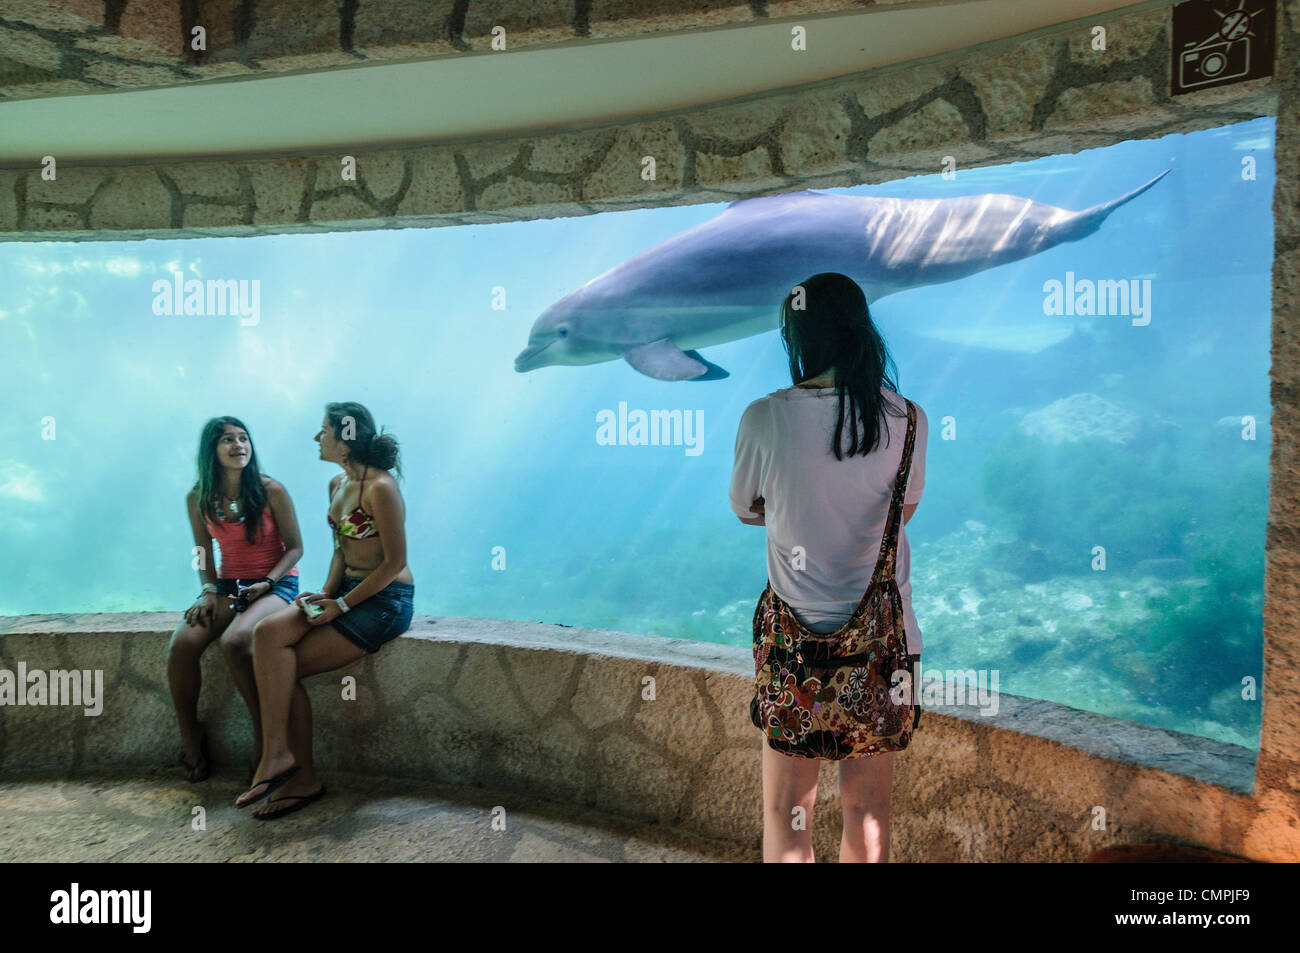 Touristen sehen ein Delphinschwimmen (Tümmler) in einem Unterwasser-Aquarium Xcarat Maya Freizeitpark südlich von Cancun und Playa del Carmen auf der mexikanischen Halbinsel Yucatana. Stockfoto